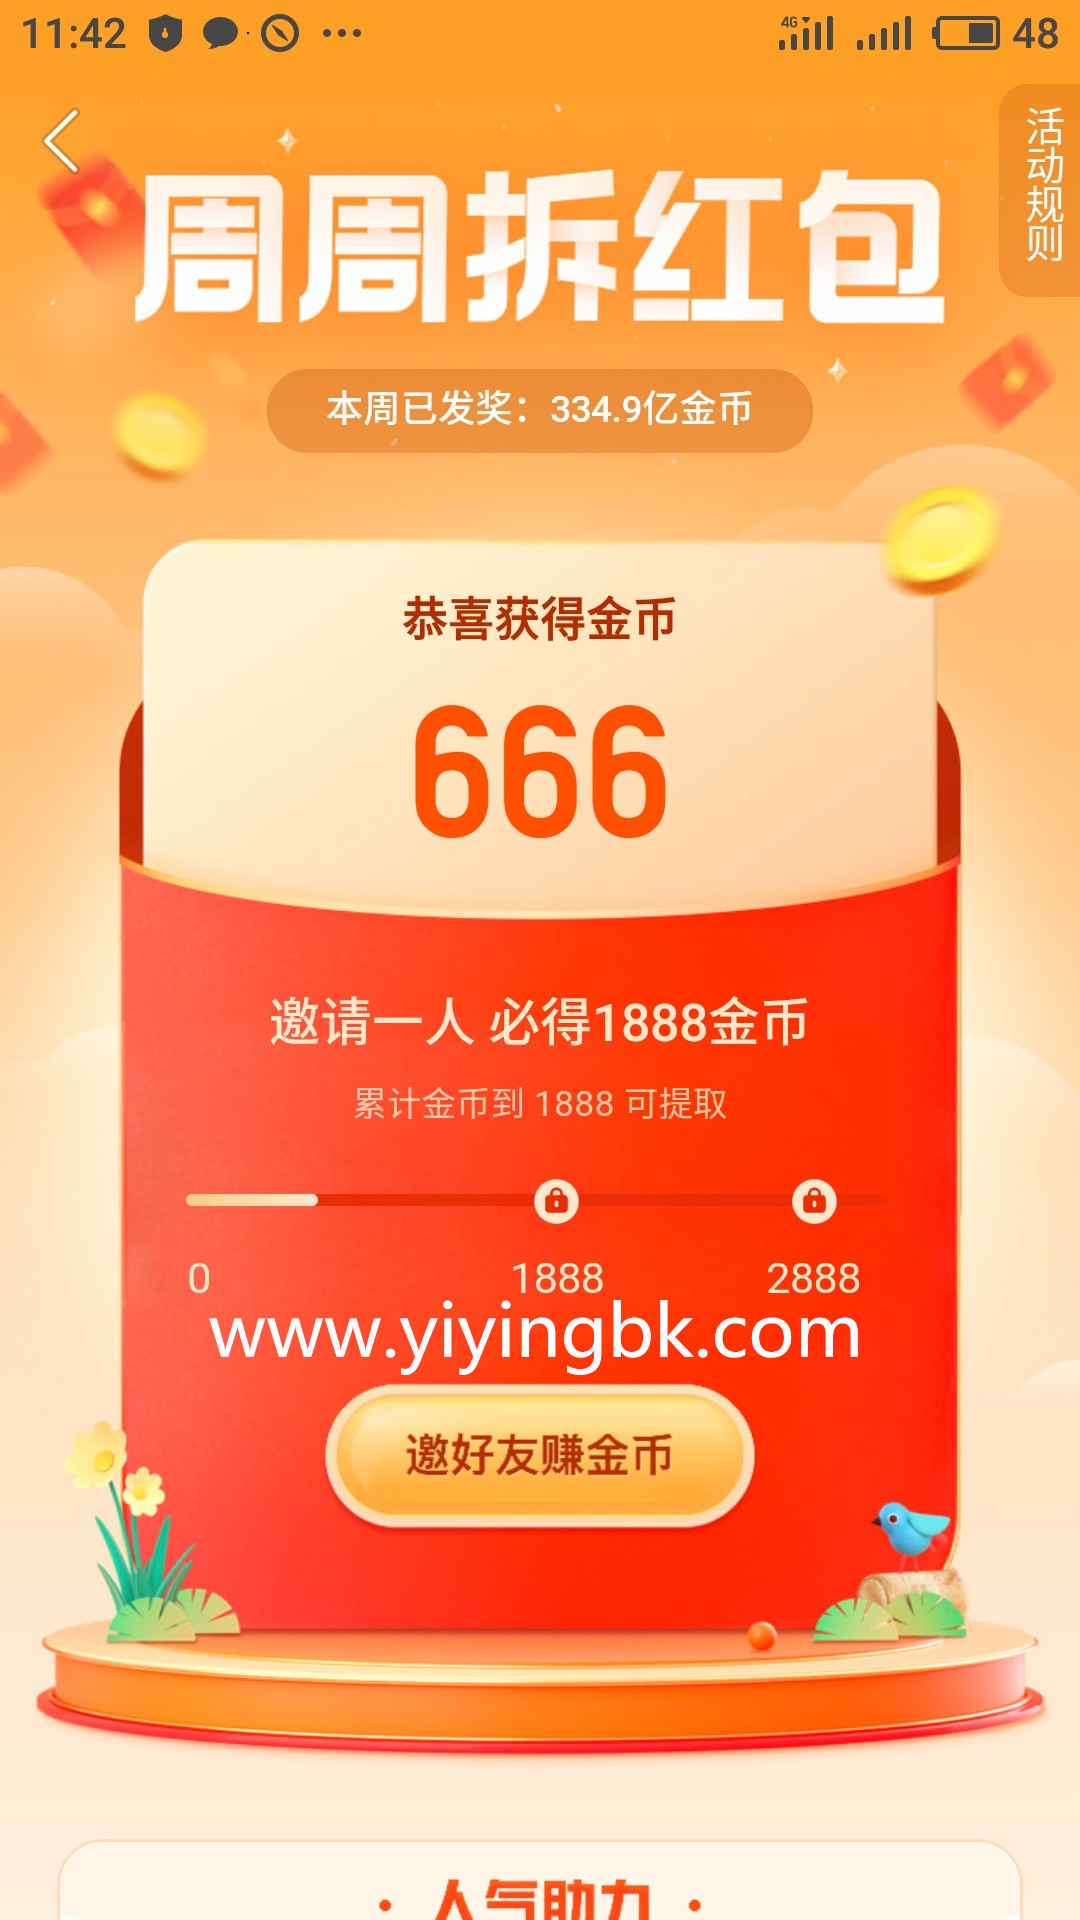 周周拆红包，红包可以直接提现到微信支付宝。www.yiyingbk.com